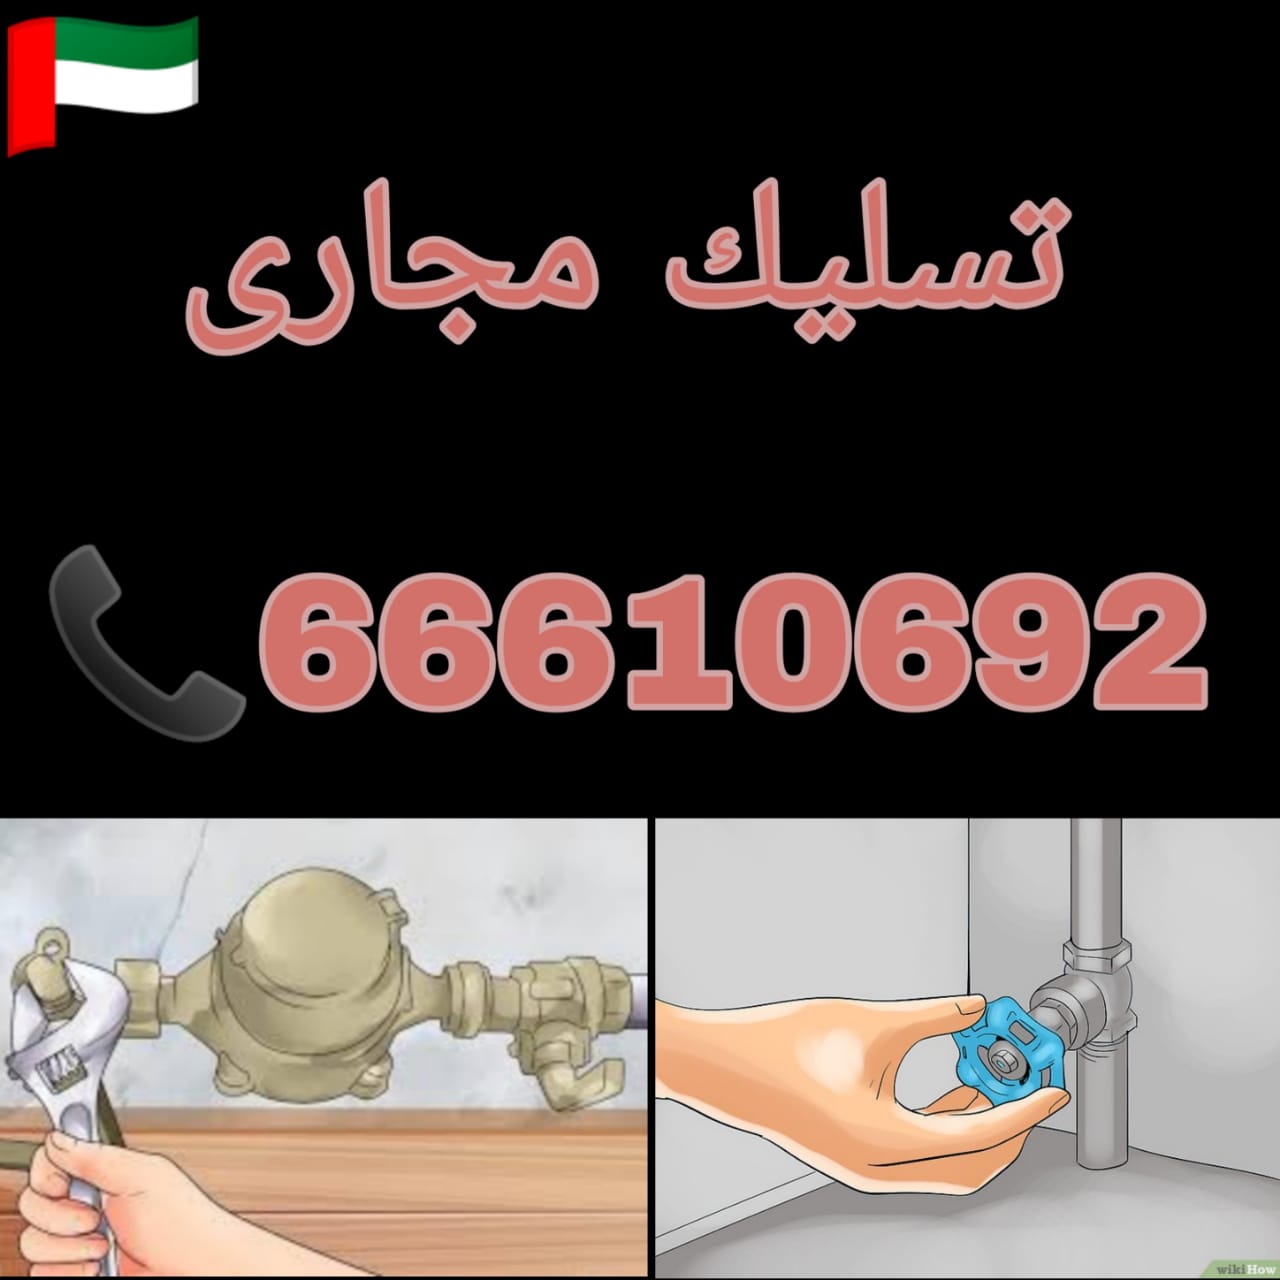 تسليك مجاري الرابية / 66610692 / صيانة وتركيب فني صحي بالكويت